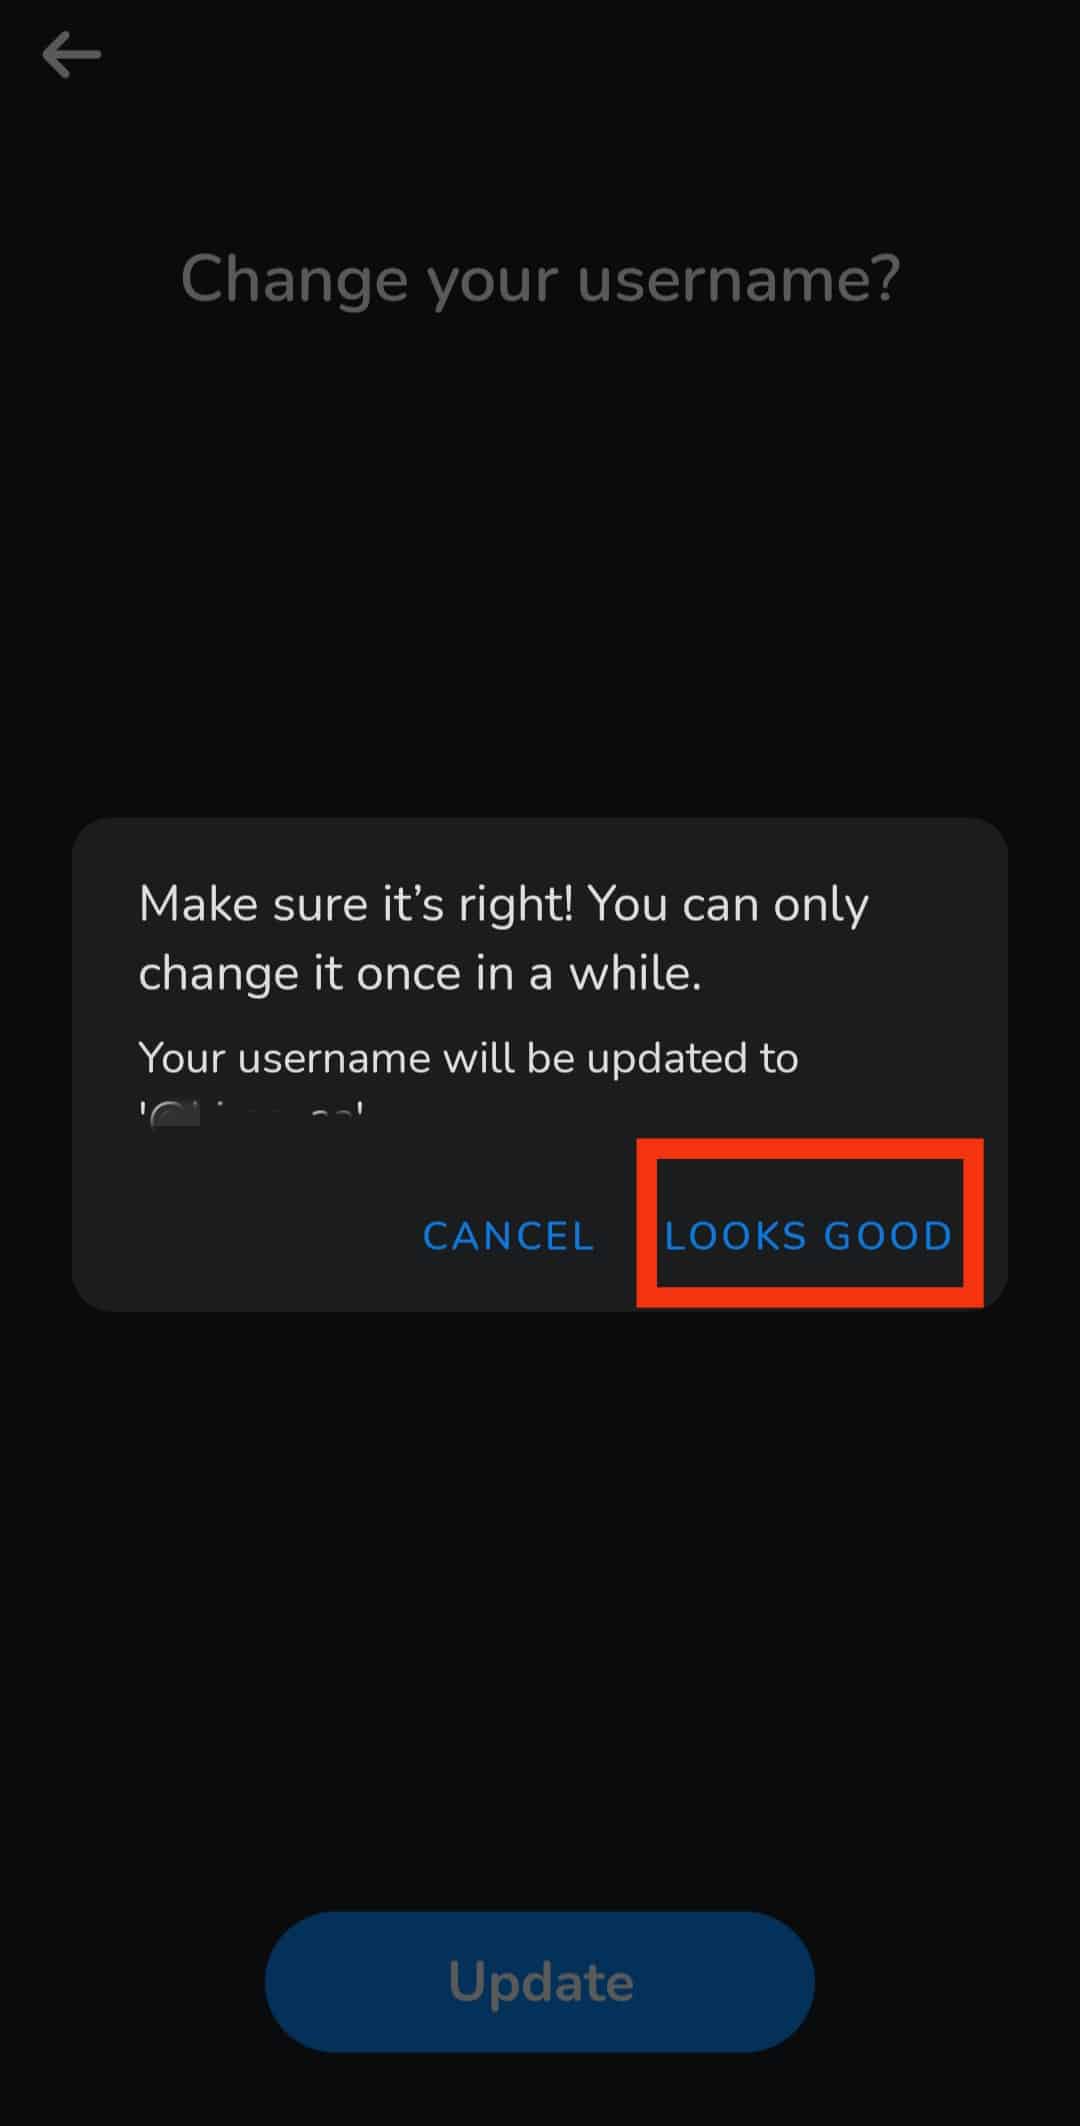 Toque el botón Se ve bien para guardar su nuevo nombre de usuario después de que aparezca el cuadro de confirmación.